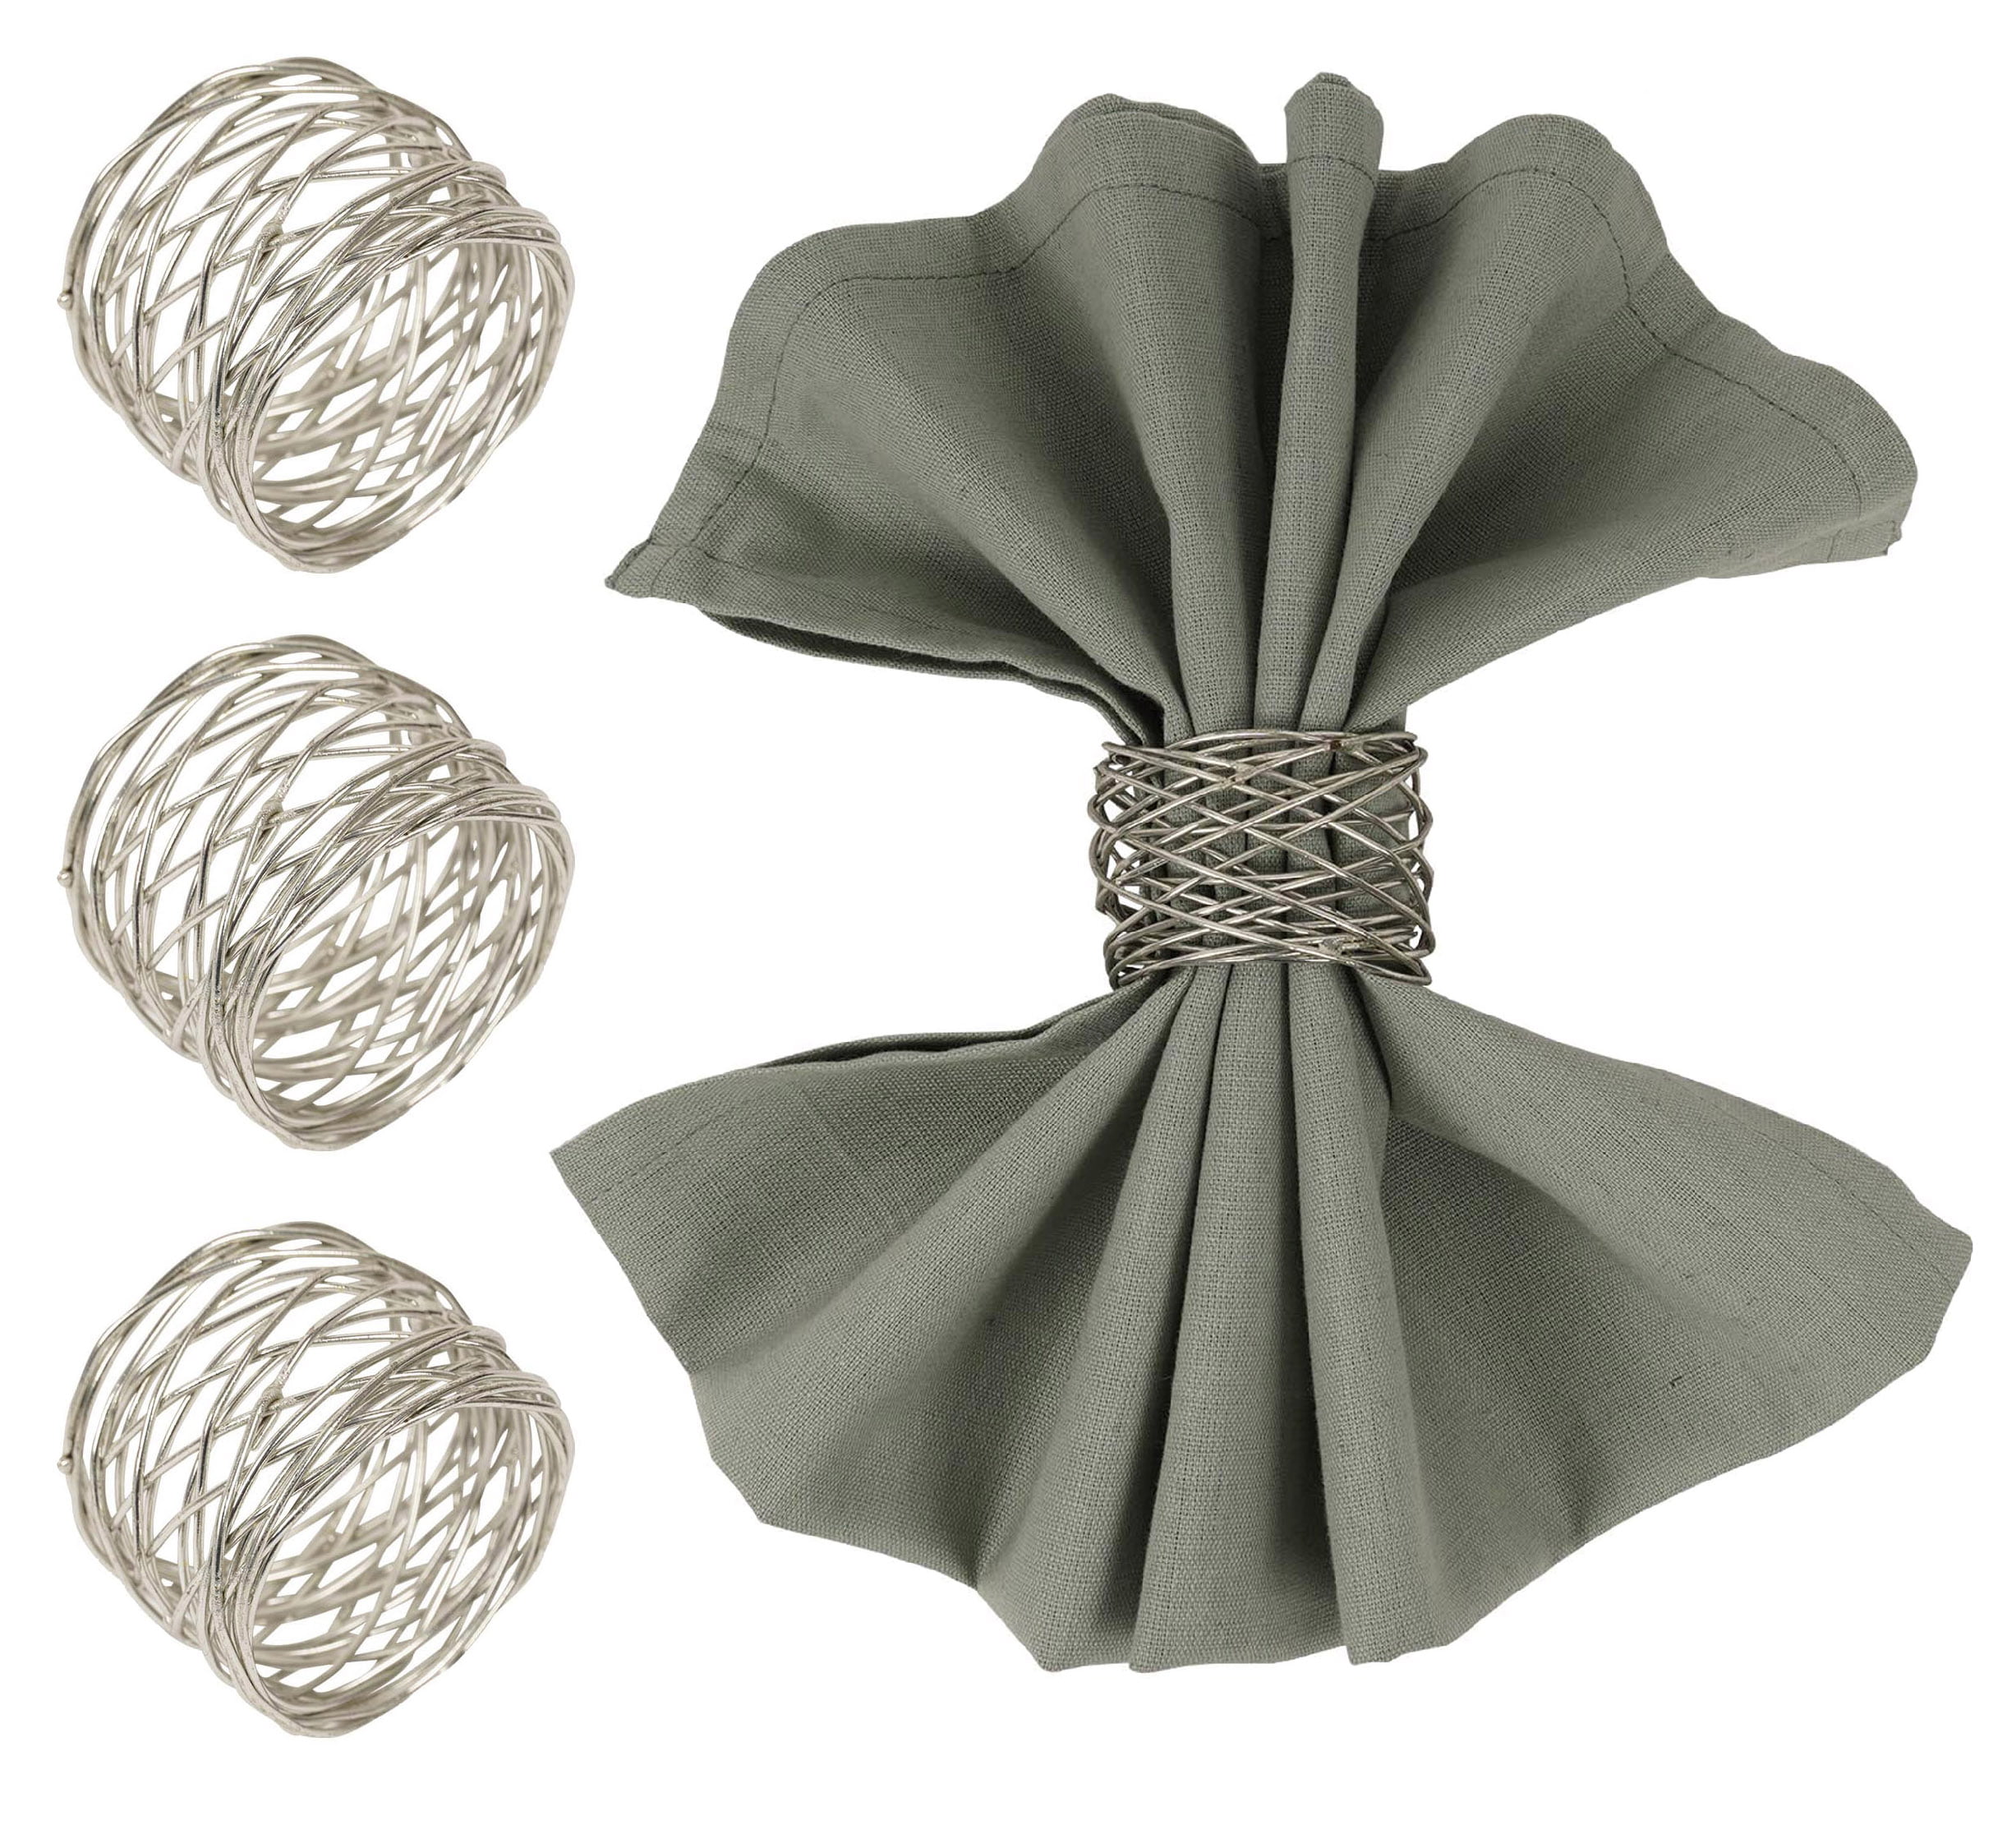 Details about   Set of 6 Rhinestone Napkin Ring Handmade Serviette Buckle Holder Wedding Dinner 